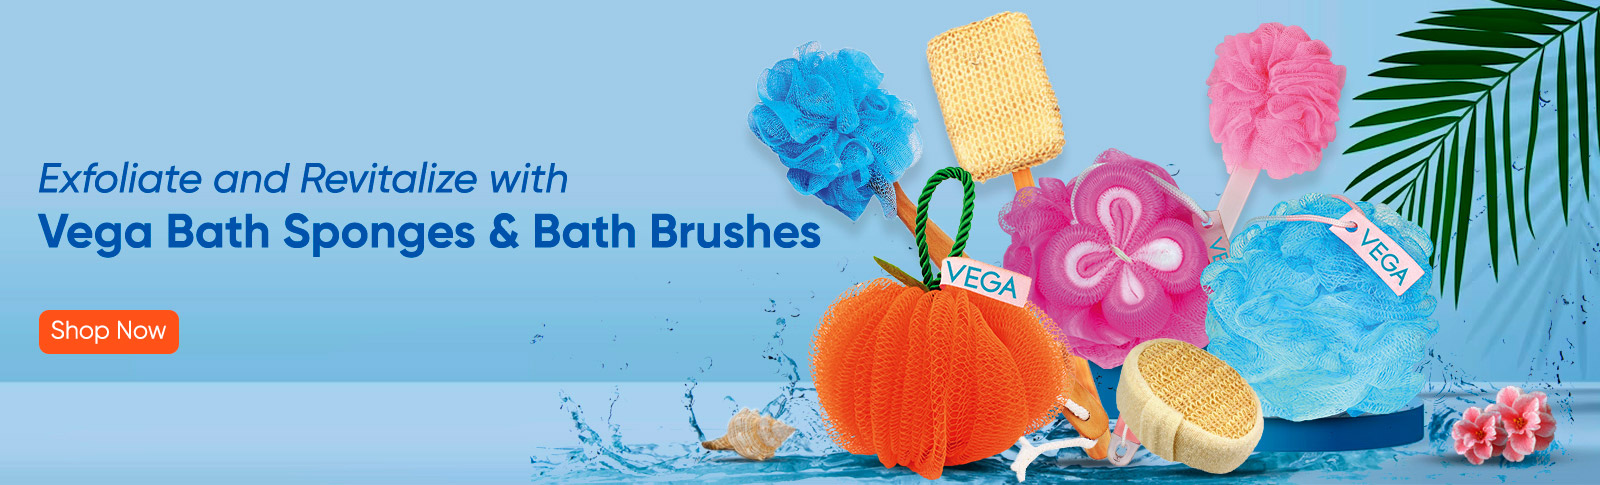 Vega Bath Sponges & Bath Brushes